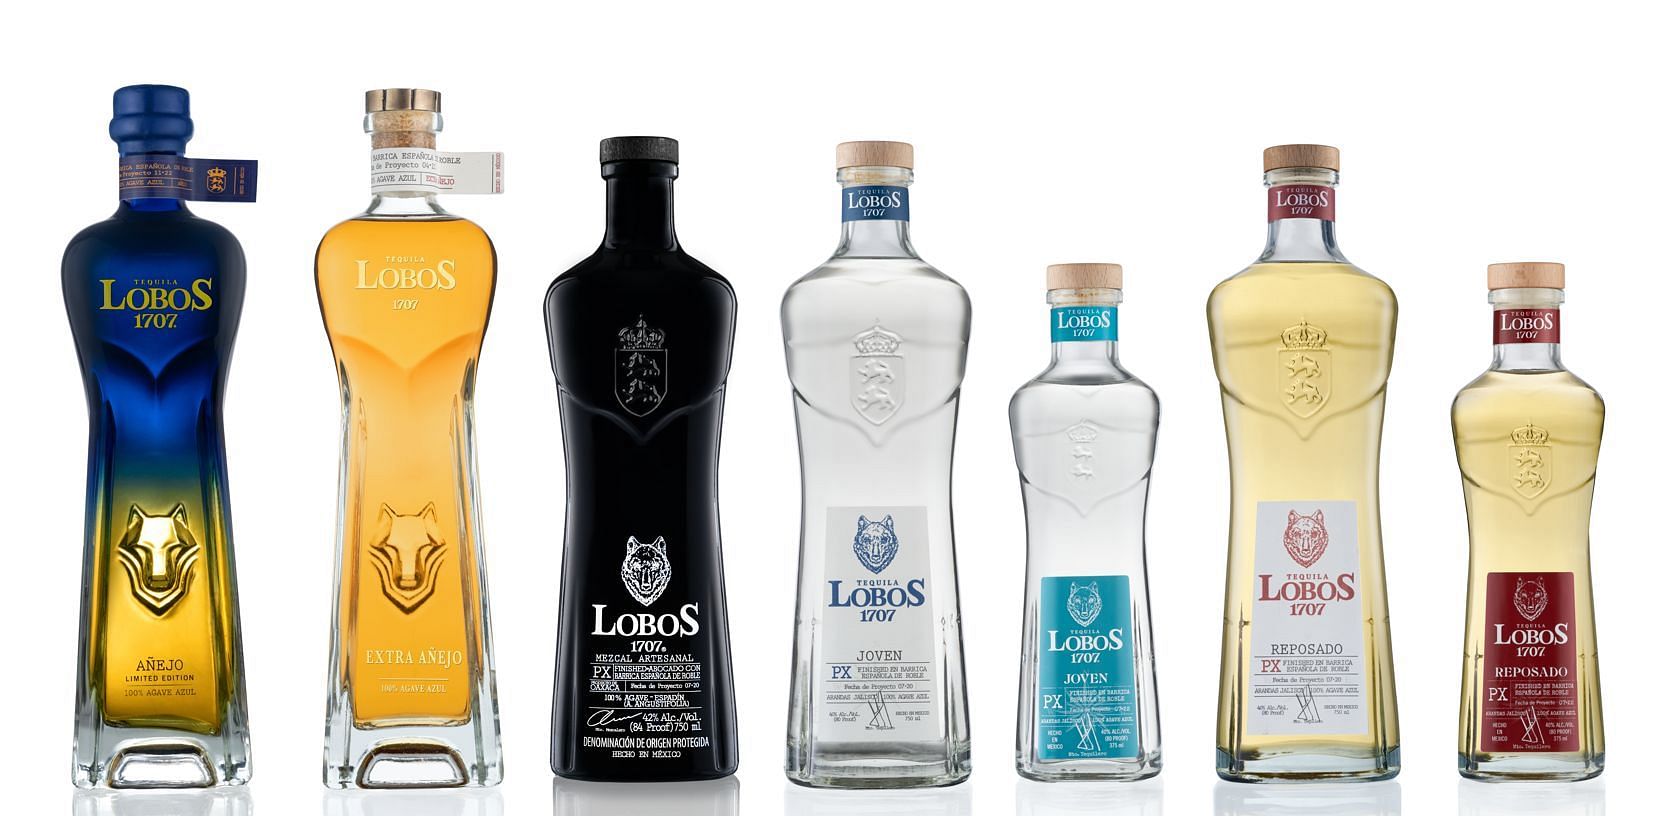 Thương hiệu rượu tequila đã thêm một sản phẩm phiên bản giới hạn vào dòng sản phẩm của mình (Hình ảnh qua Lobos 1707)